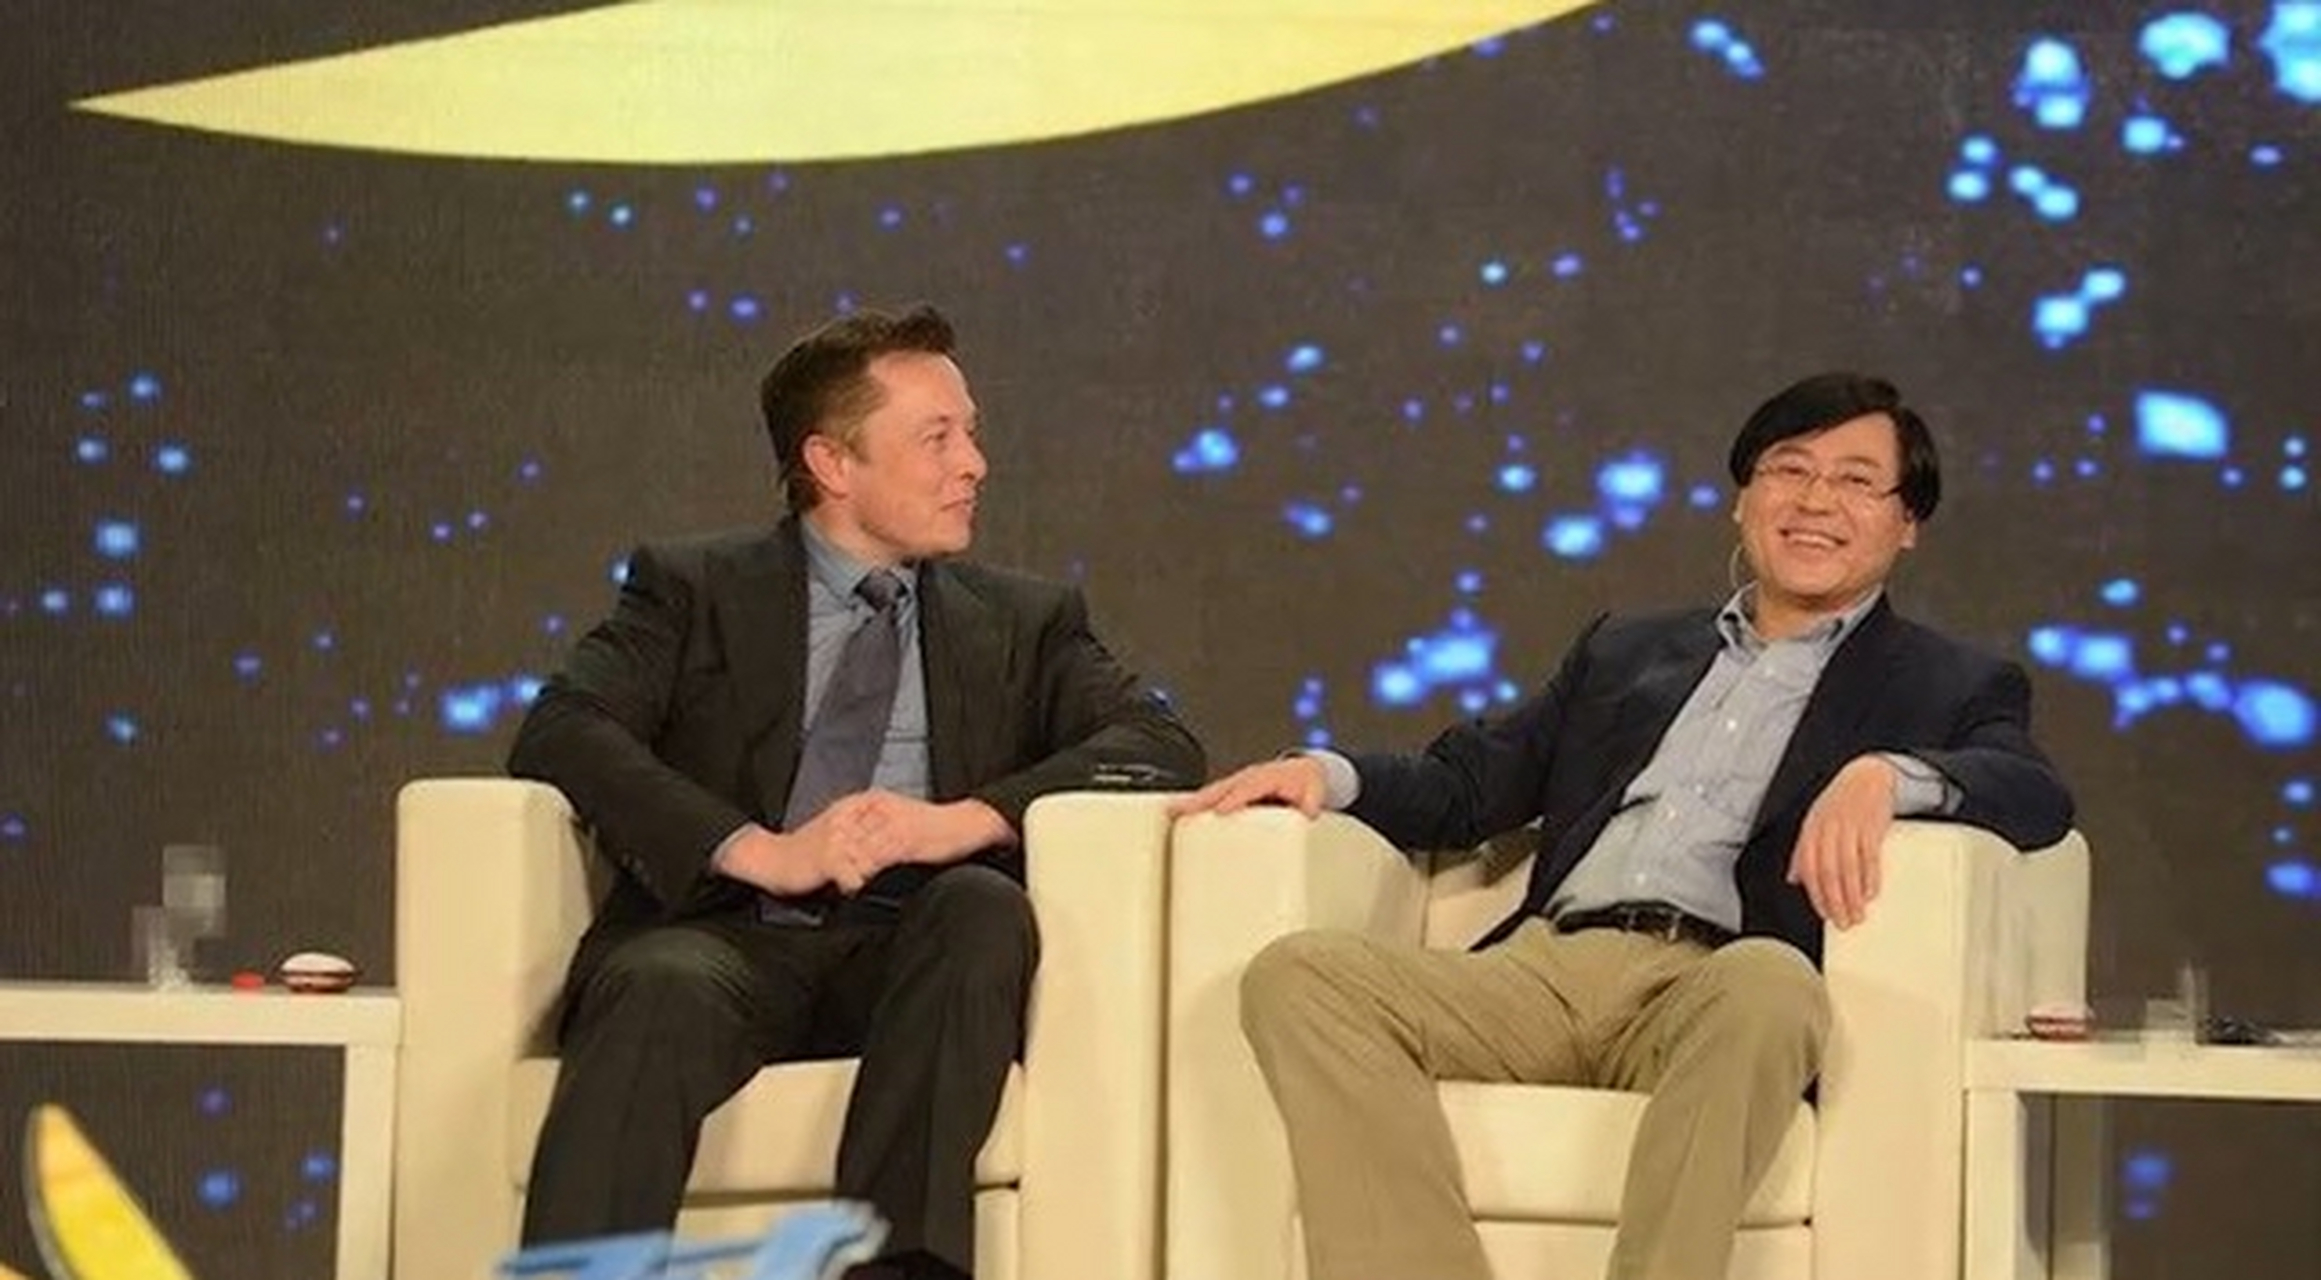 2014年,在央视《对话》节目中,杨元庆与马斯克比拼客户数量